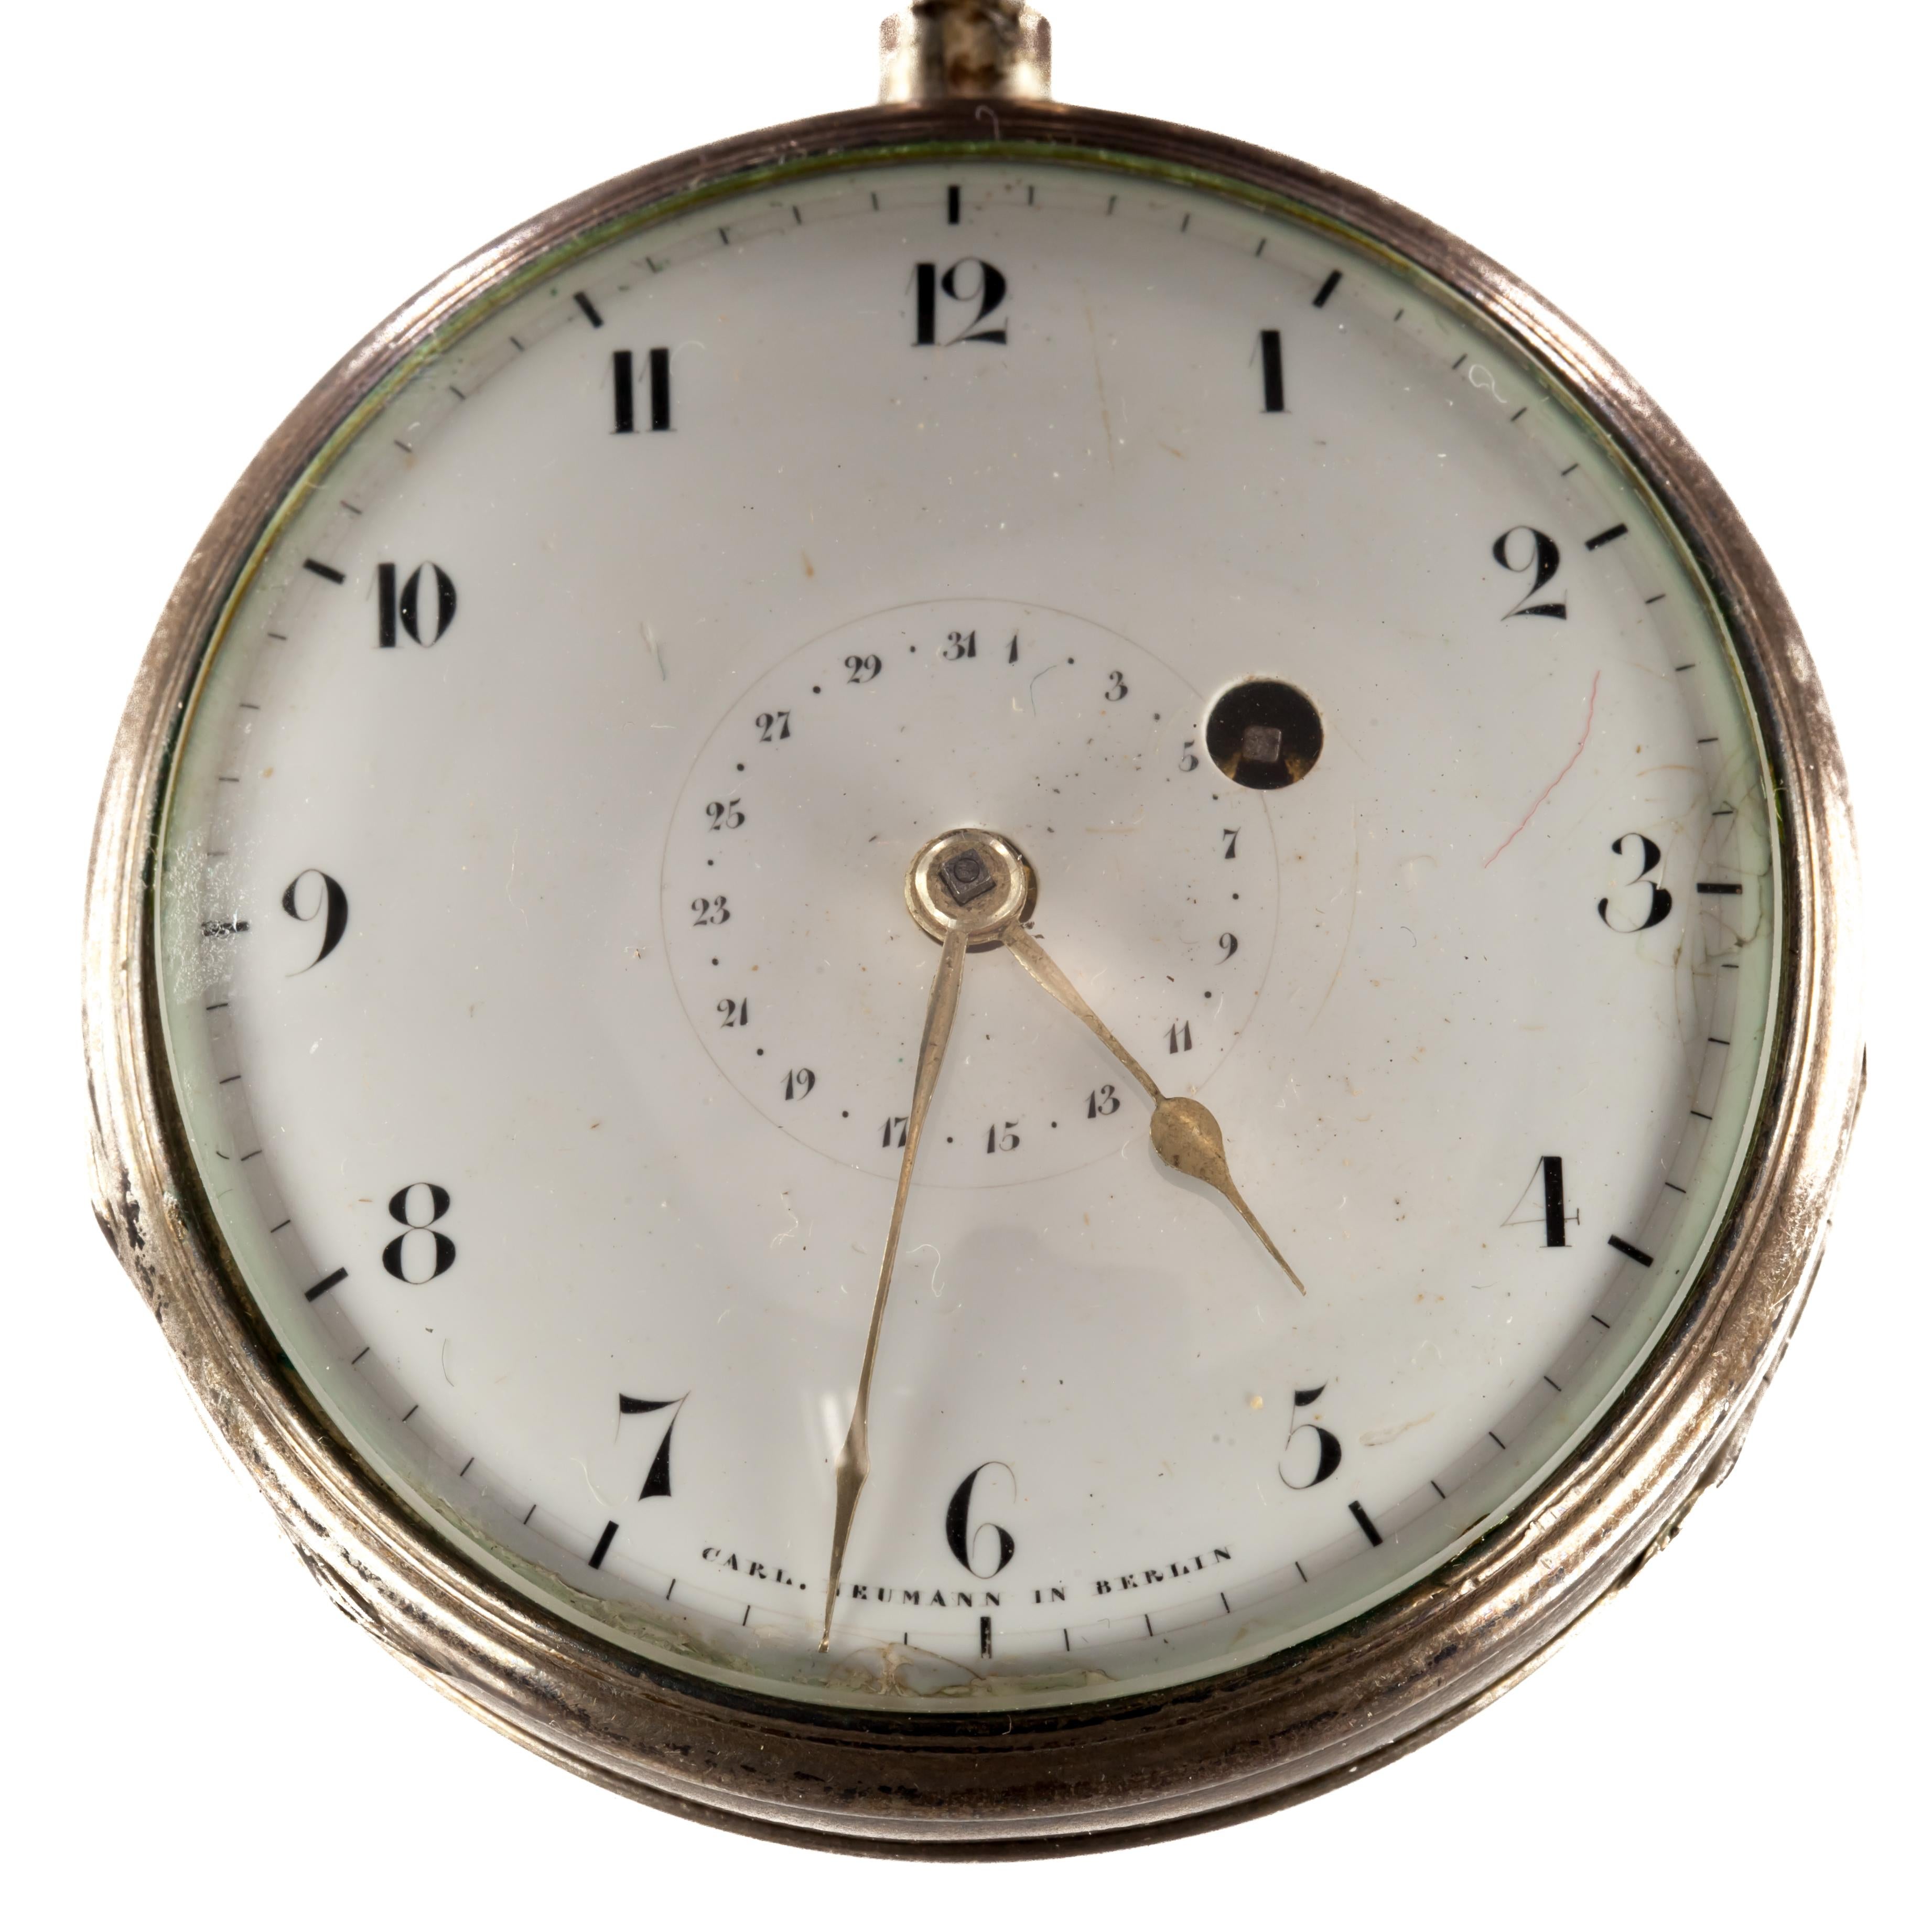 Wunderschöne antike Taschenuhr von Carl Neumann aus Berlin
Schlüssel-Wind-Bewegung
Filigrane Details im Uhrwerk
Silbernes Gehäuse
Durchmesser des Gehäuses = 55 mm
Dicke des Gehäuses = 21 mm
Gesamtmasse = 125.8 Gramm
Die Uhr ist in gutem